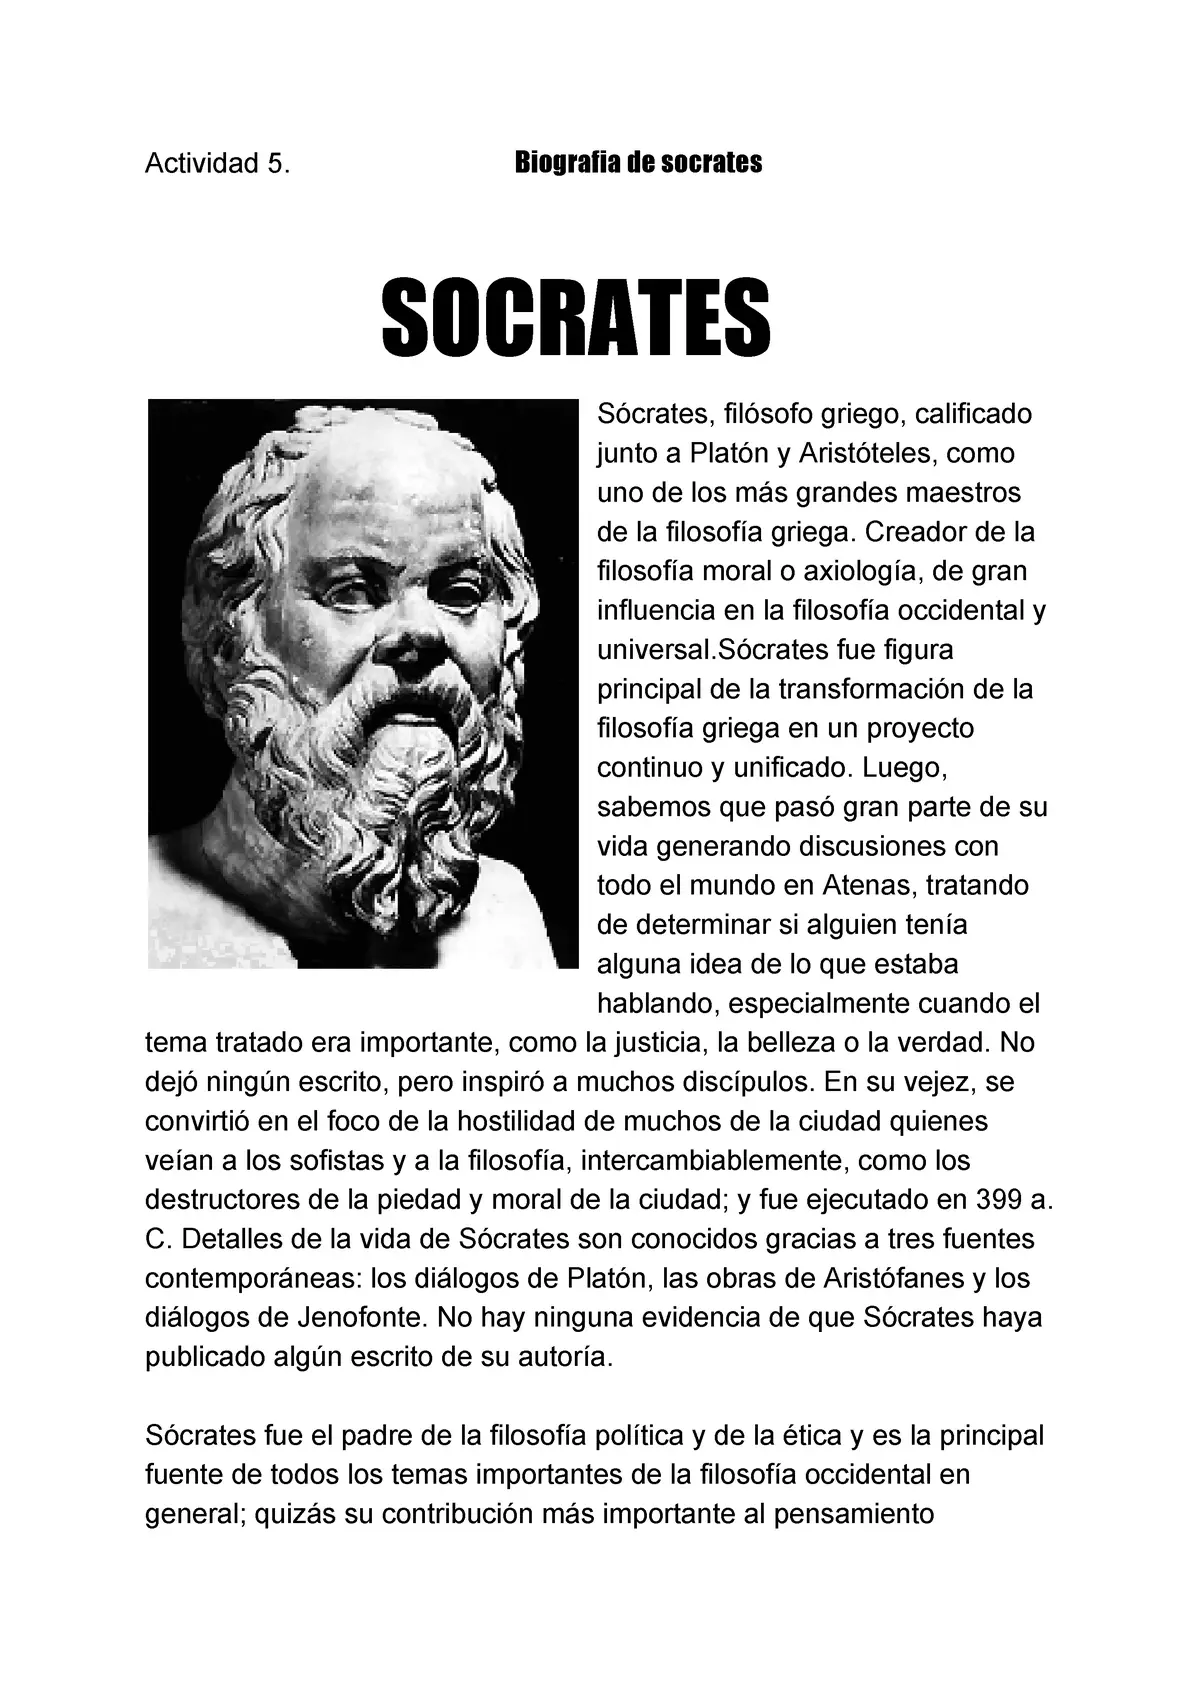 quien fue socrates resumen - Qué demostró Sócrates